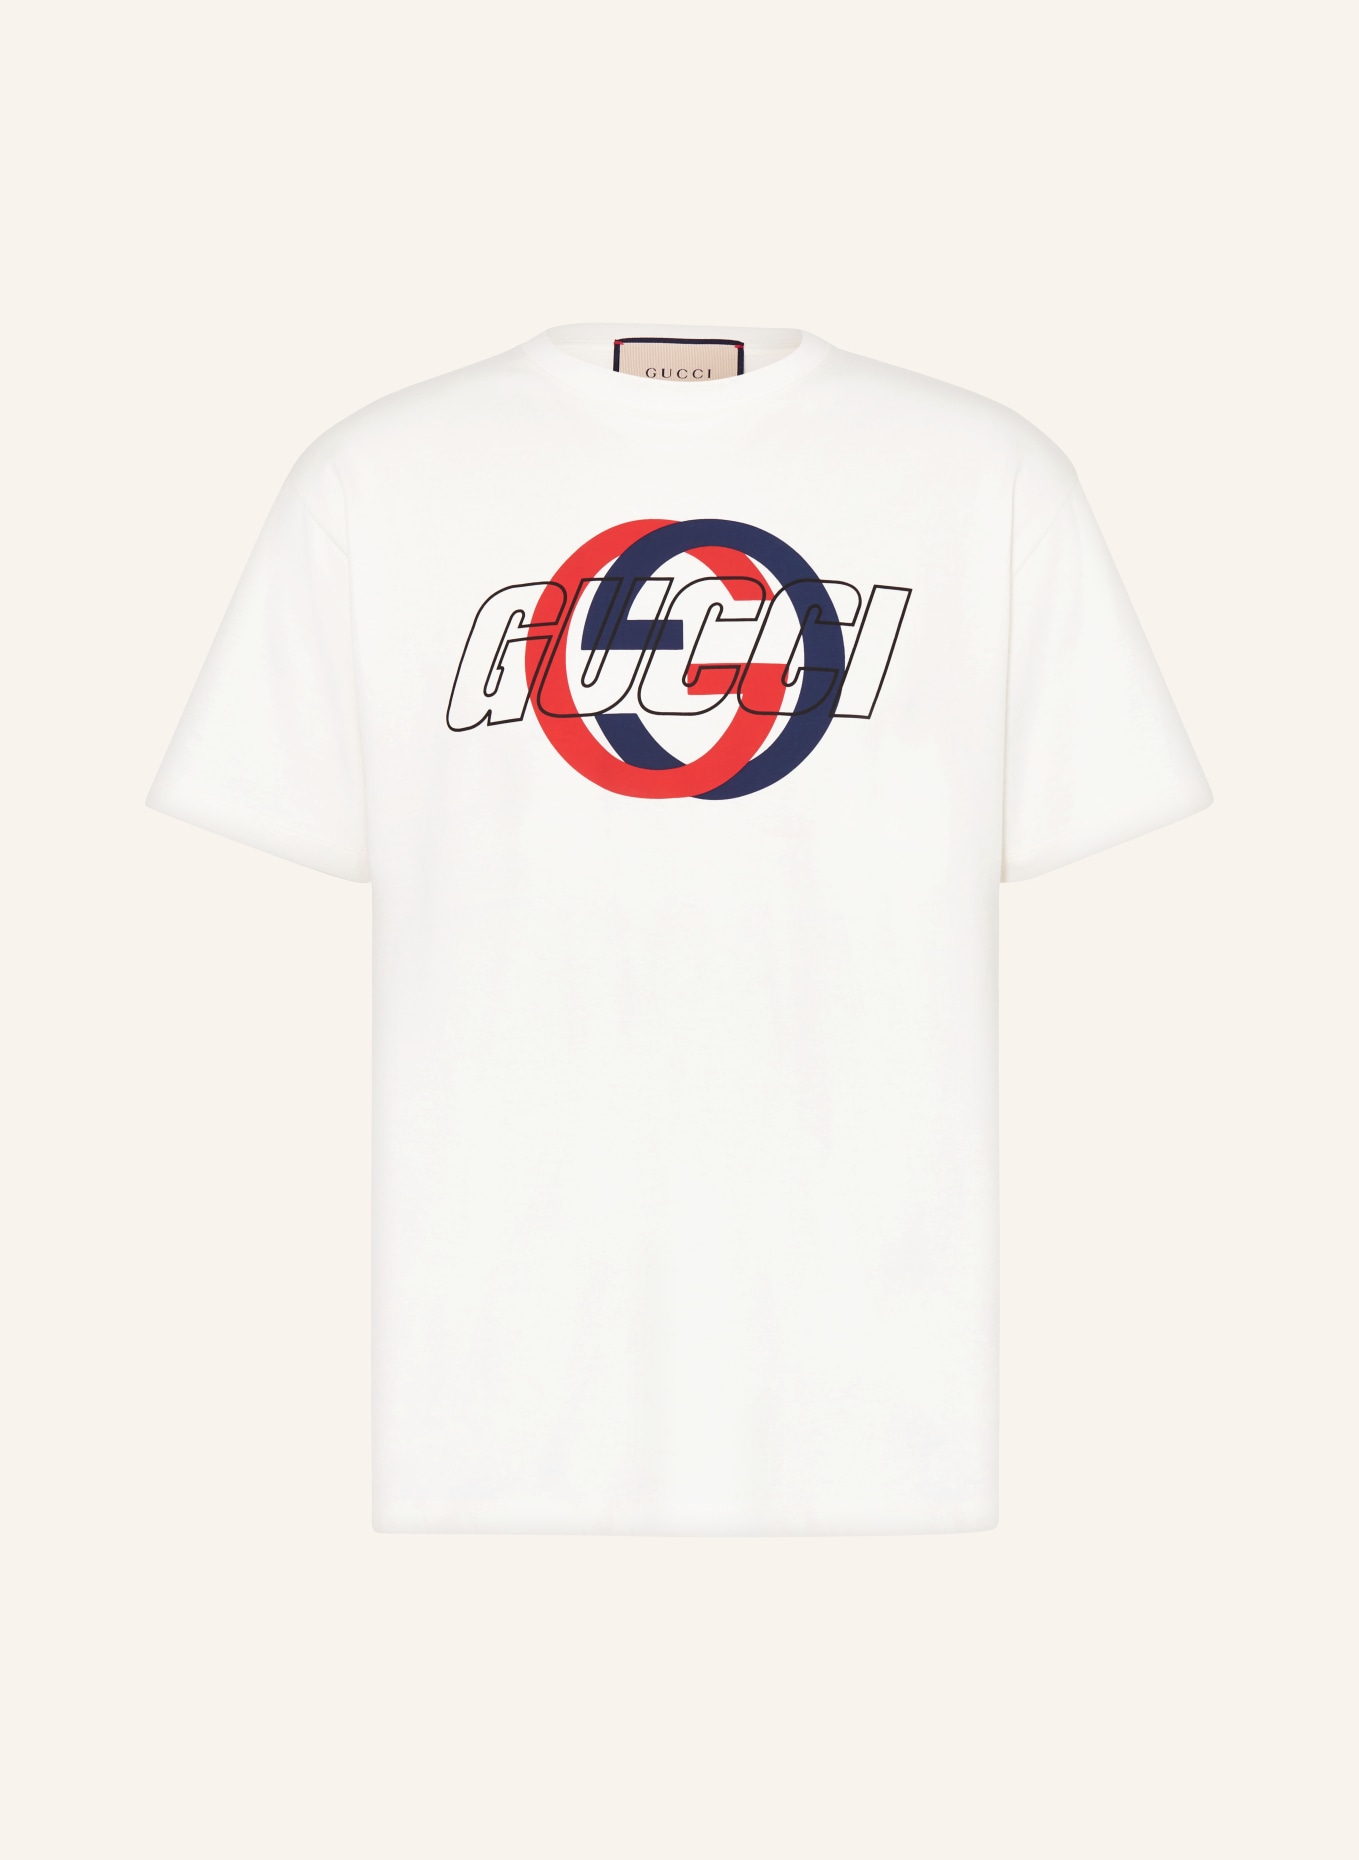 GUCCI T-shirt, Color: ECRU (Image 1)